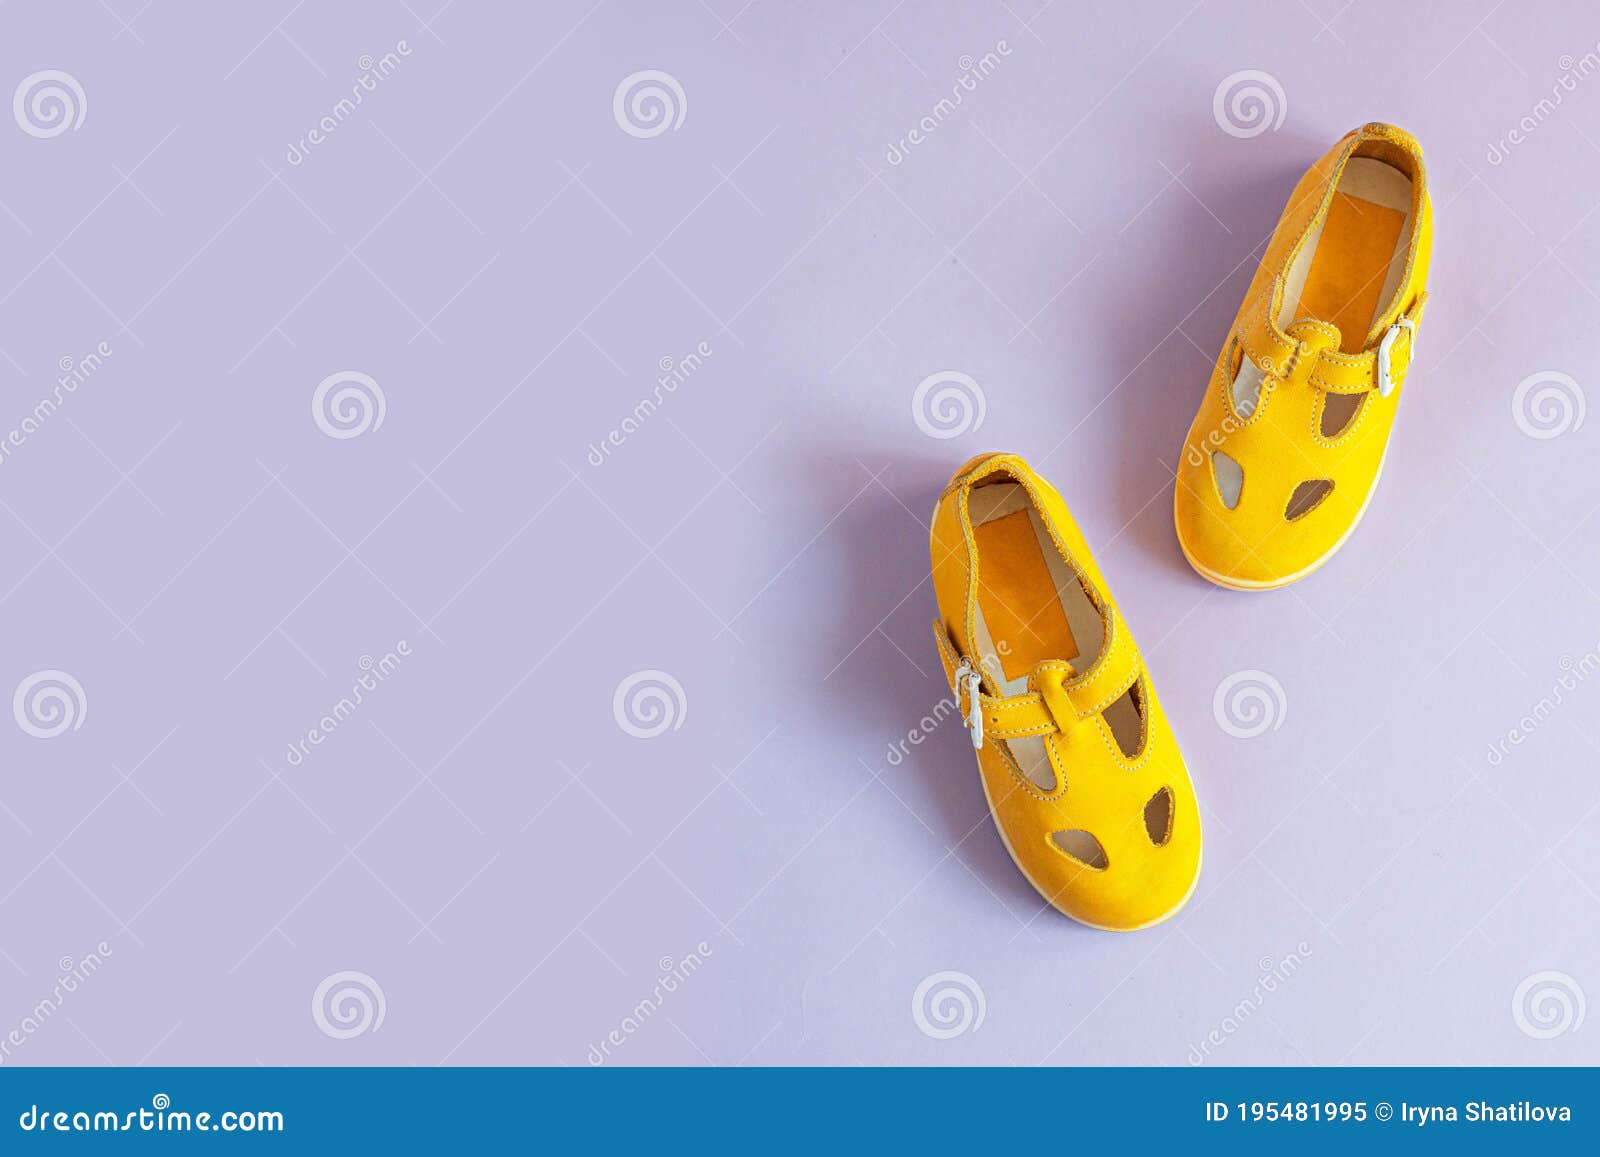 Zapatos Brillantes Amarillos Para Niños Con Fondo Lilac Con Espacio De Concepto De Ropa De Bebé. Capa Plana De Superi Imagen de archivo - Imagen de fondo, activo: 195481995